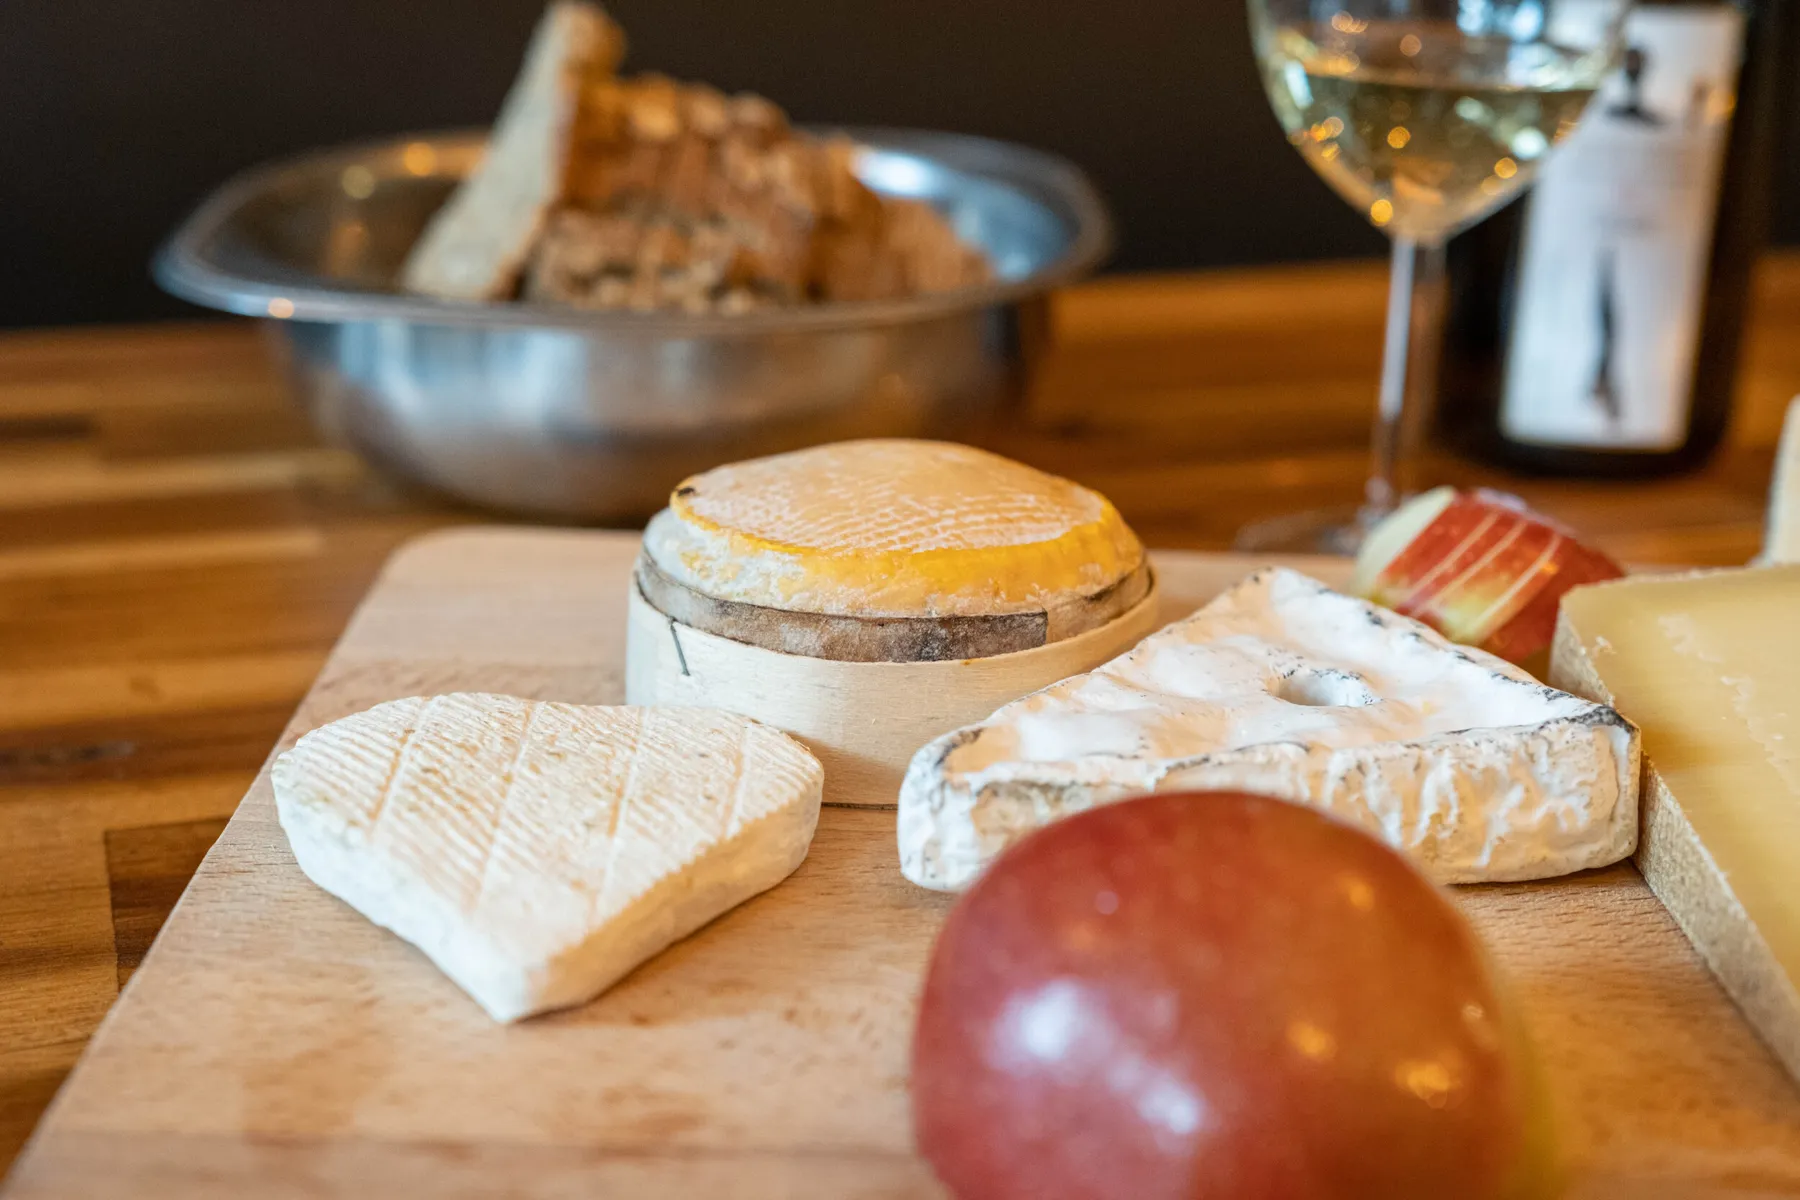 La chaleureuse cuisine au fromage, le sens de la convivialité et du partage